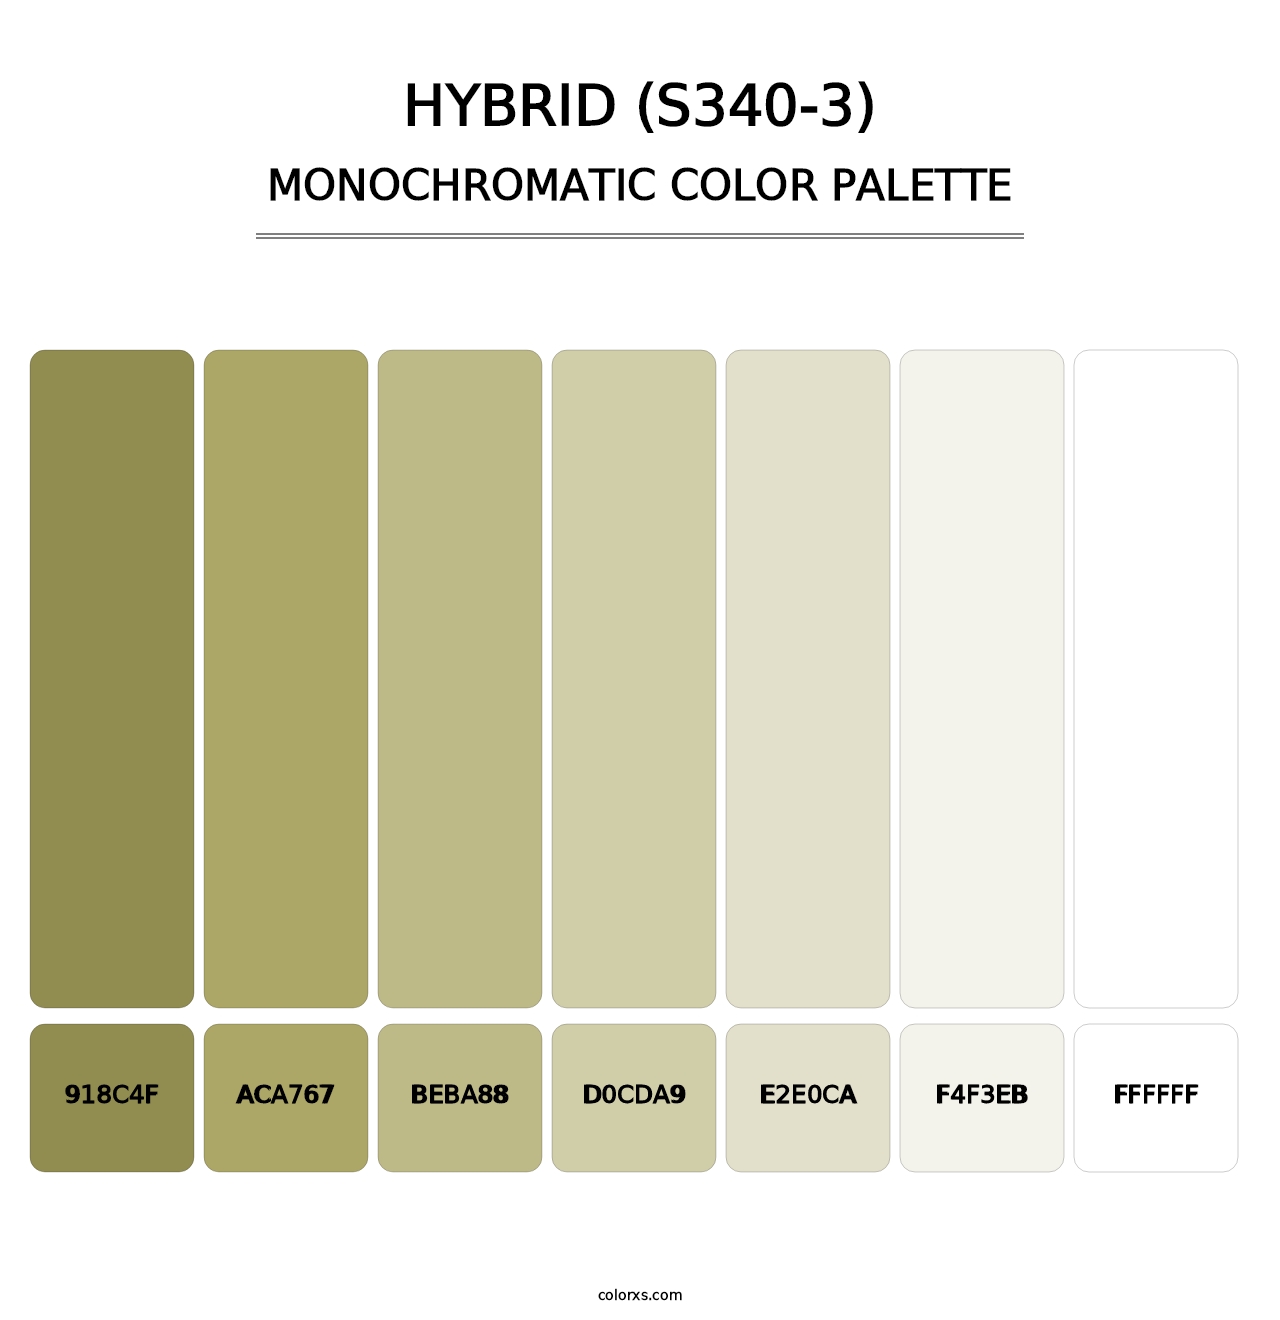 Hybrid (S340-3) - Monochromatic Color Palette